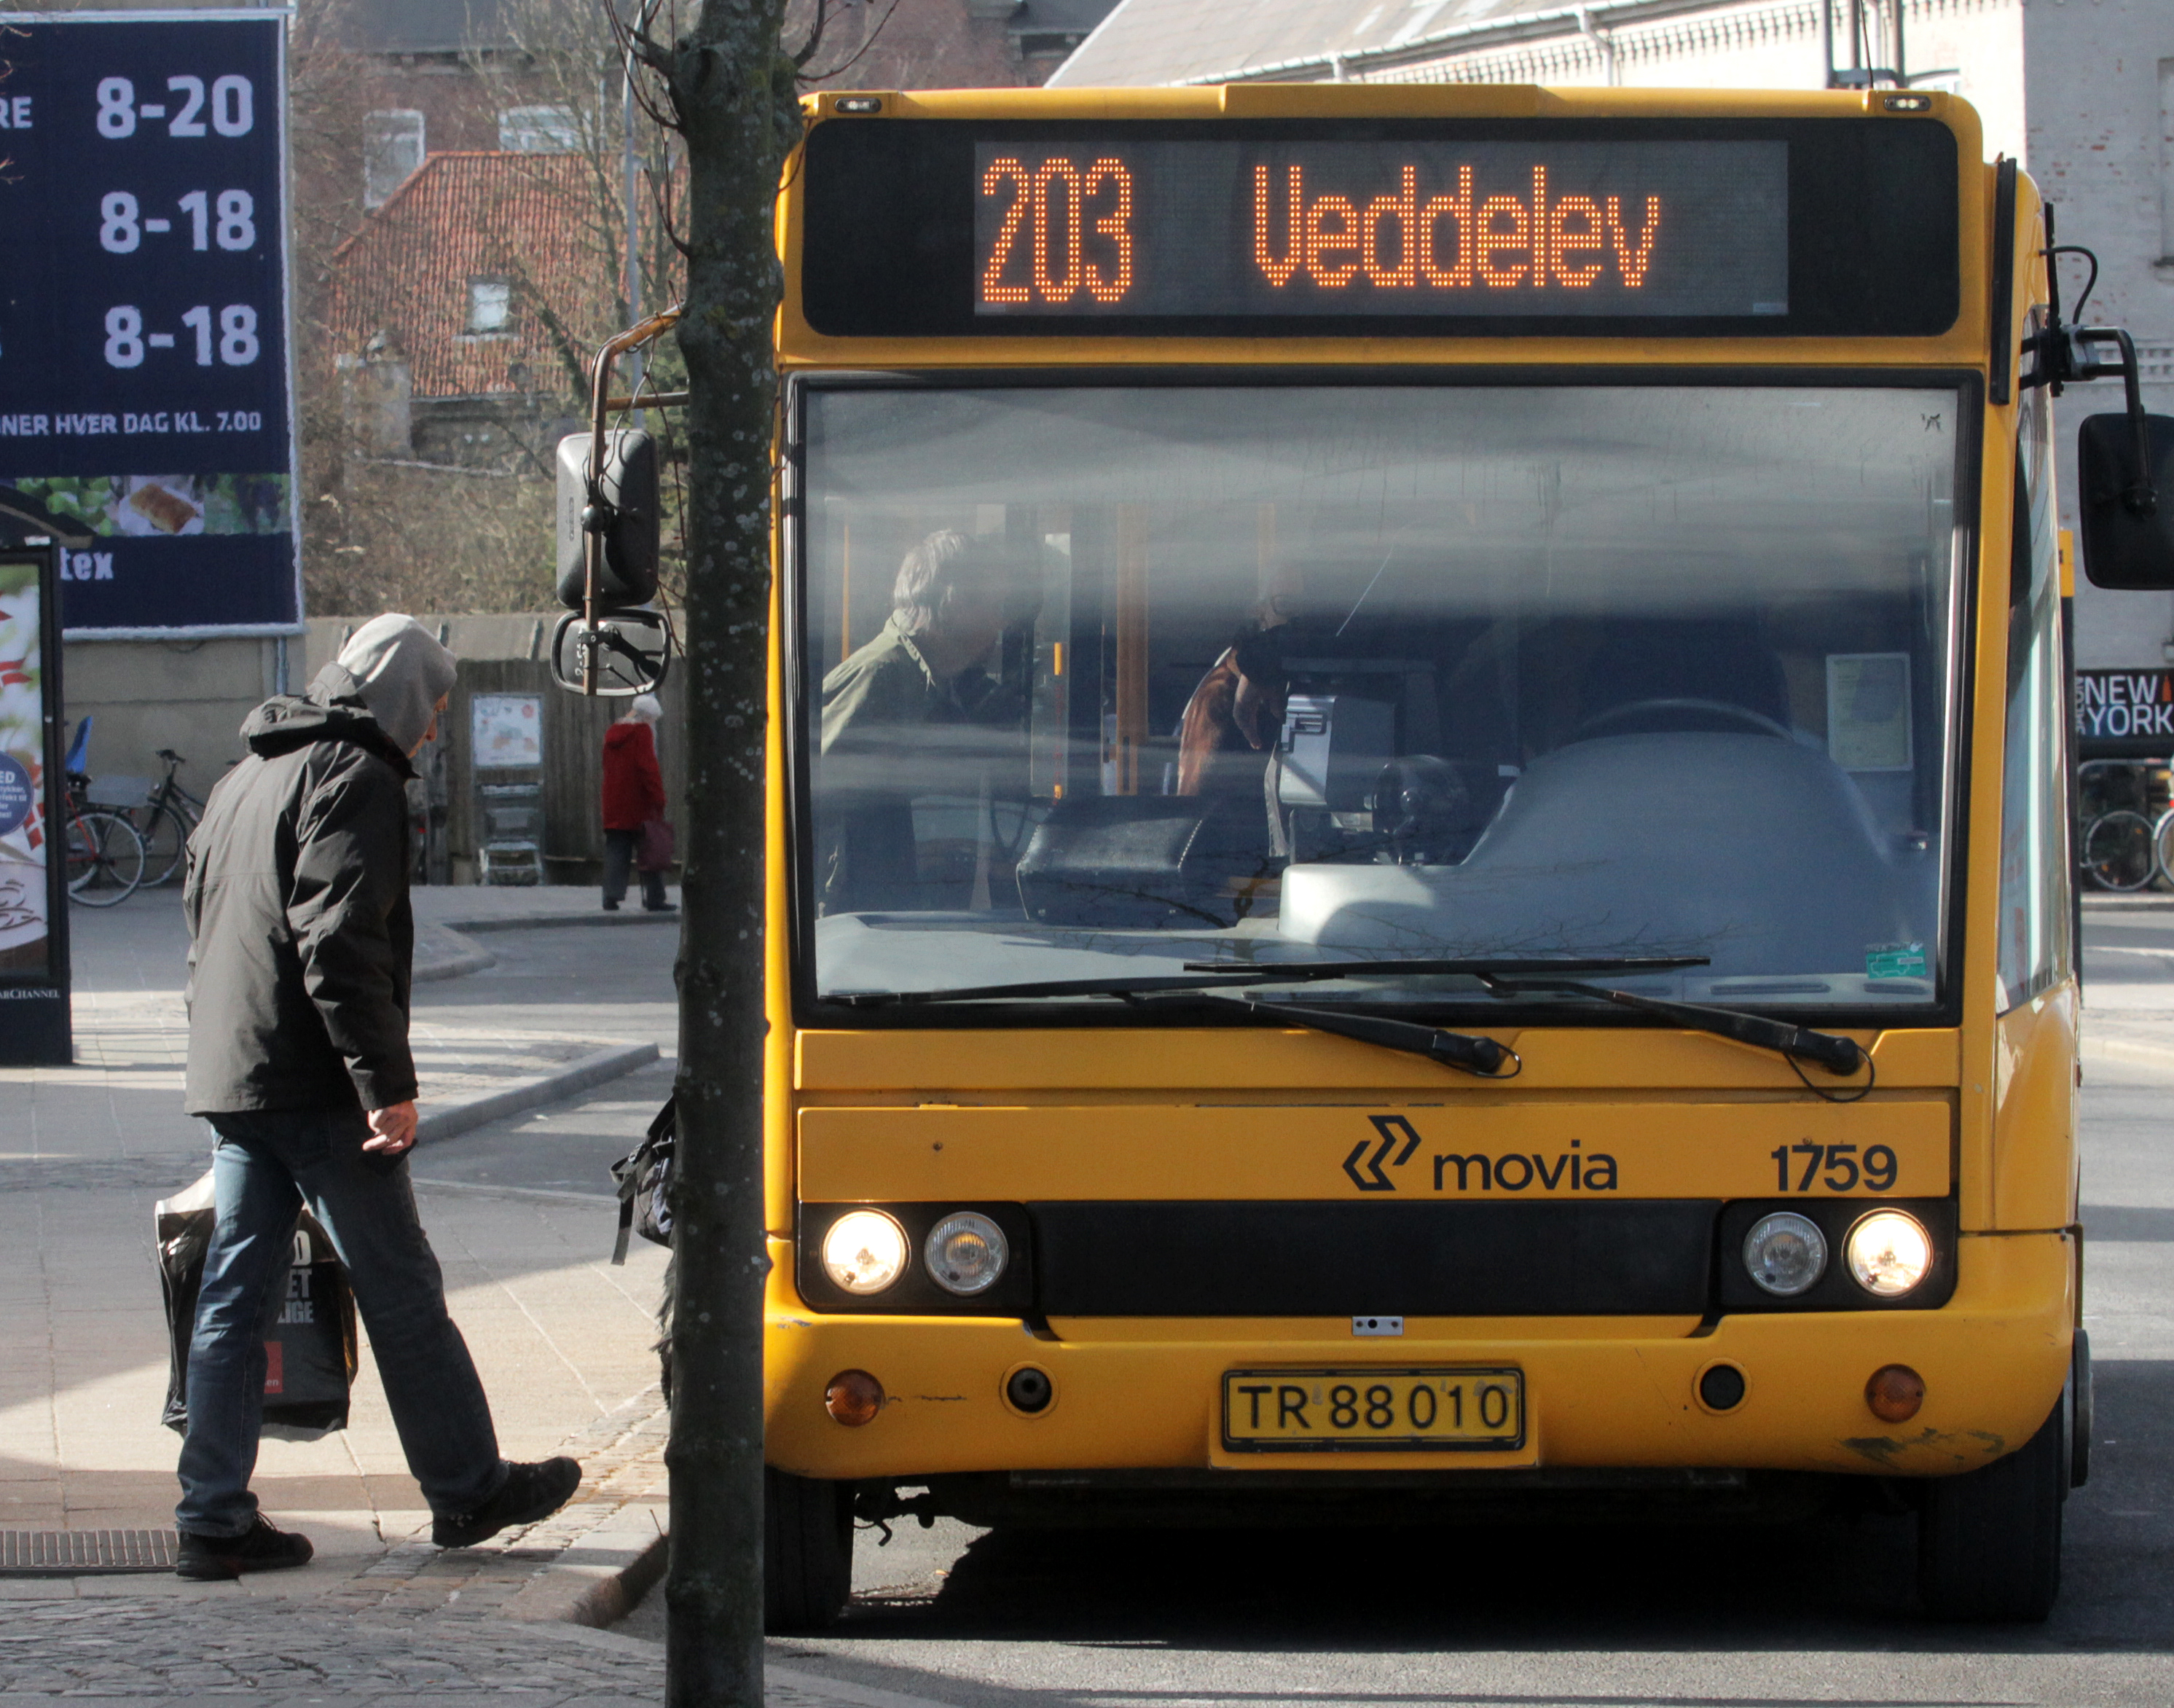 Buses in Roskilde